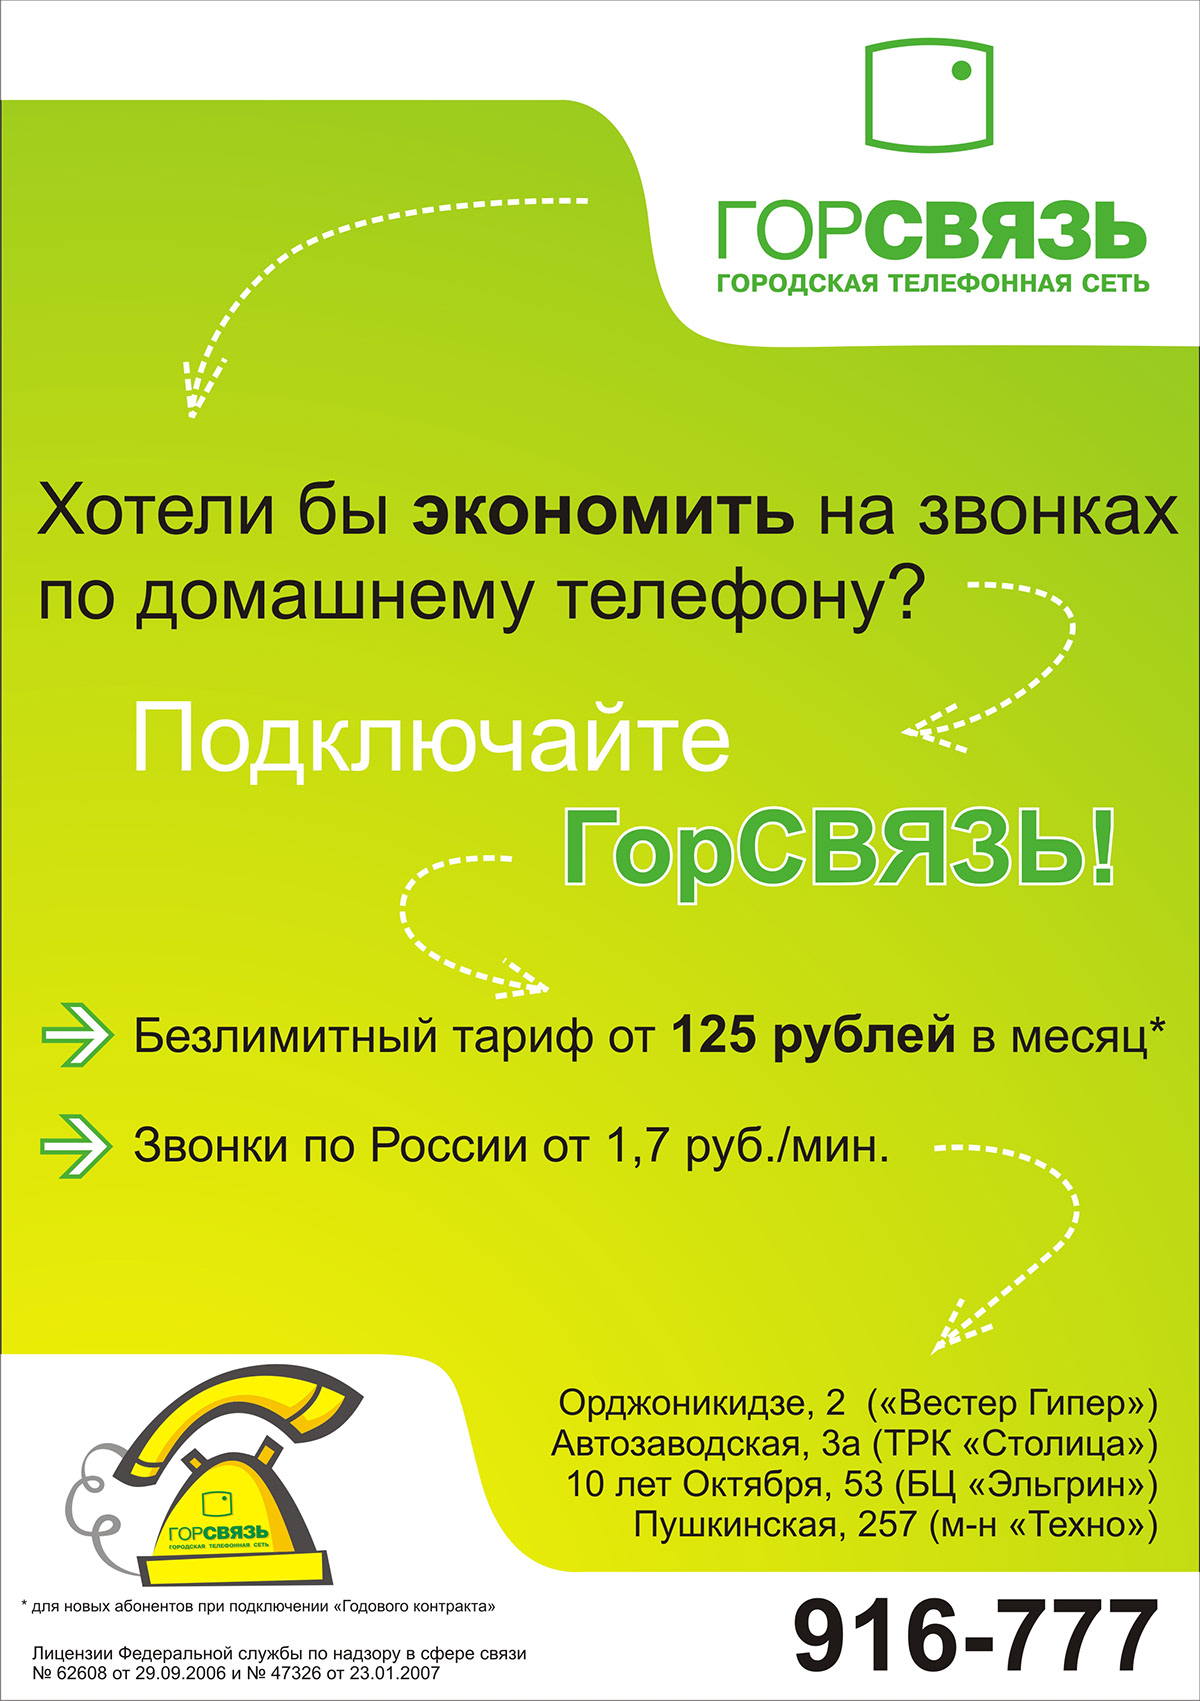 er-telecom dom.ru booklets brand Telecom phone